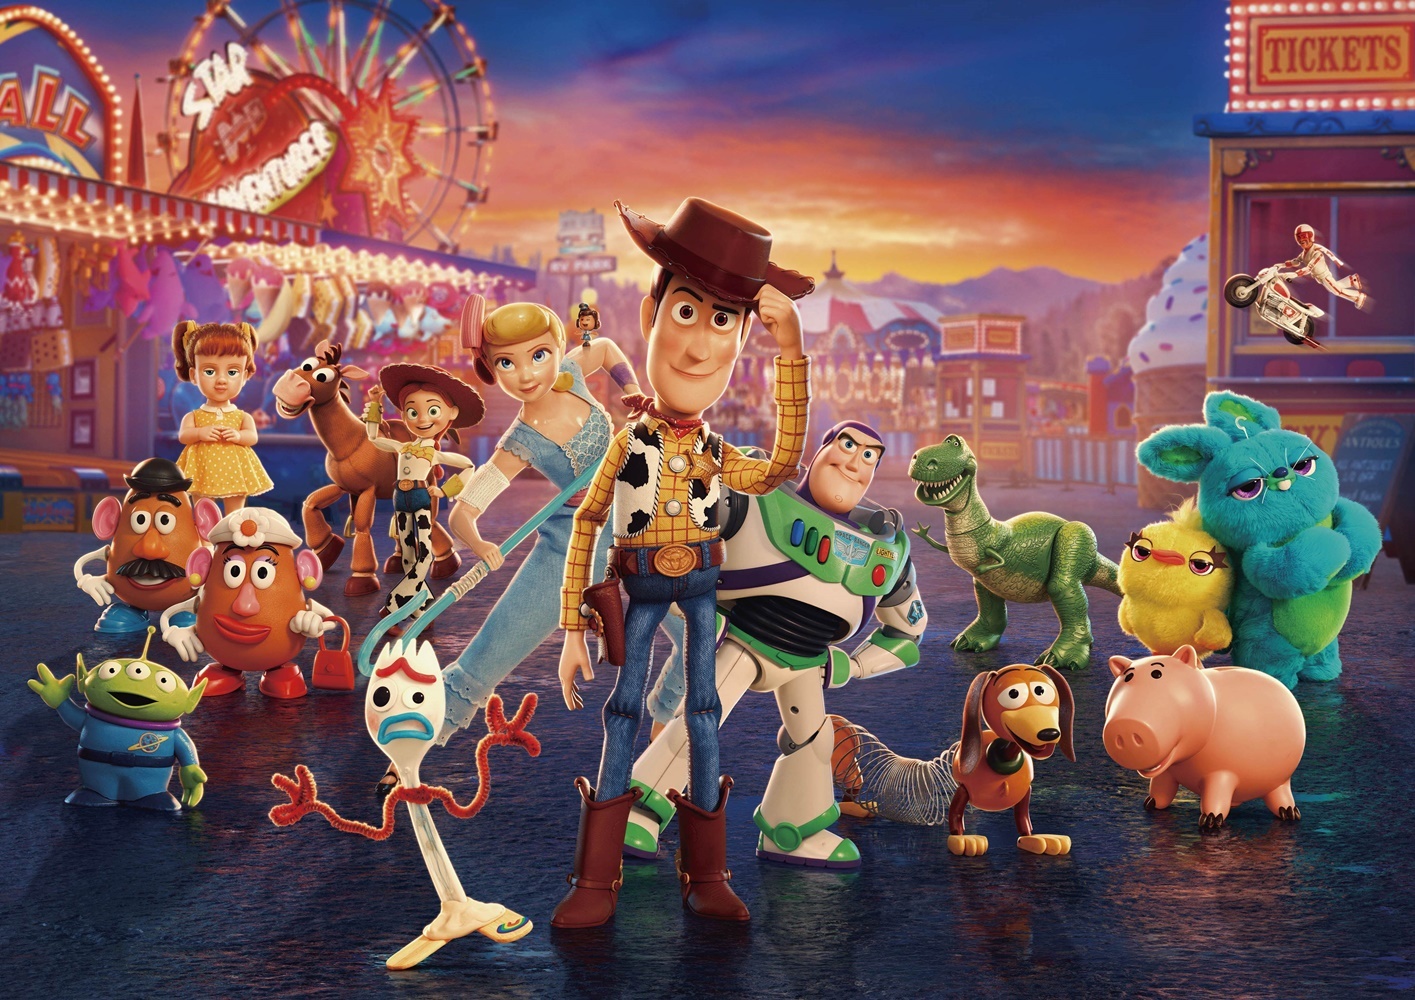 後列左から：ミスター・ポテトヘッド/ギャビー・ギャビー/ミセス・ポテトヘッド/ブルズアイ/ジェシー/レックス/ダッキー＆バニー/デューク・カブーン（上飛んでいる）   前列左から：エイリアン/フォーキー/ボー・ピープ/ギグル（ボーの肩の上）/ウッディ/バズ・ライトイヤー/スリンキー/ハム　（C）2019 Disney/Pixar. All Rights Reserved.